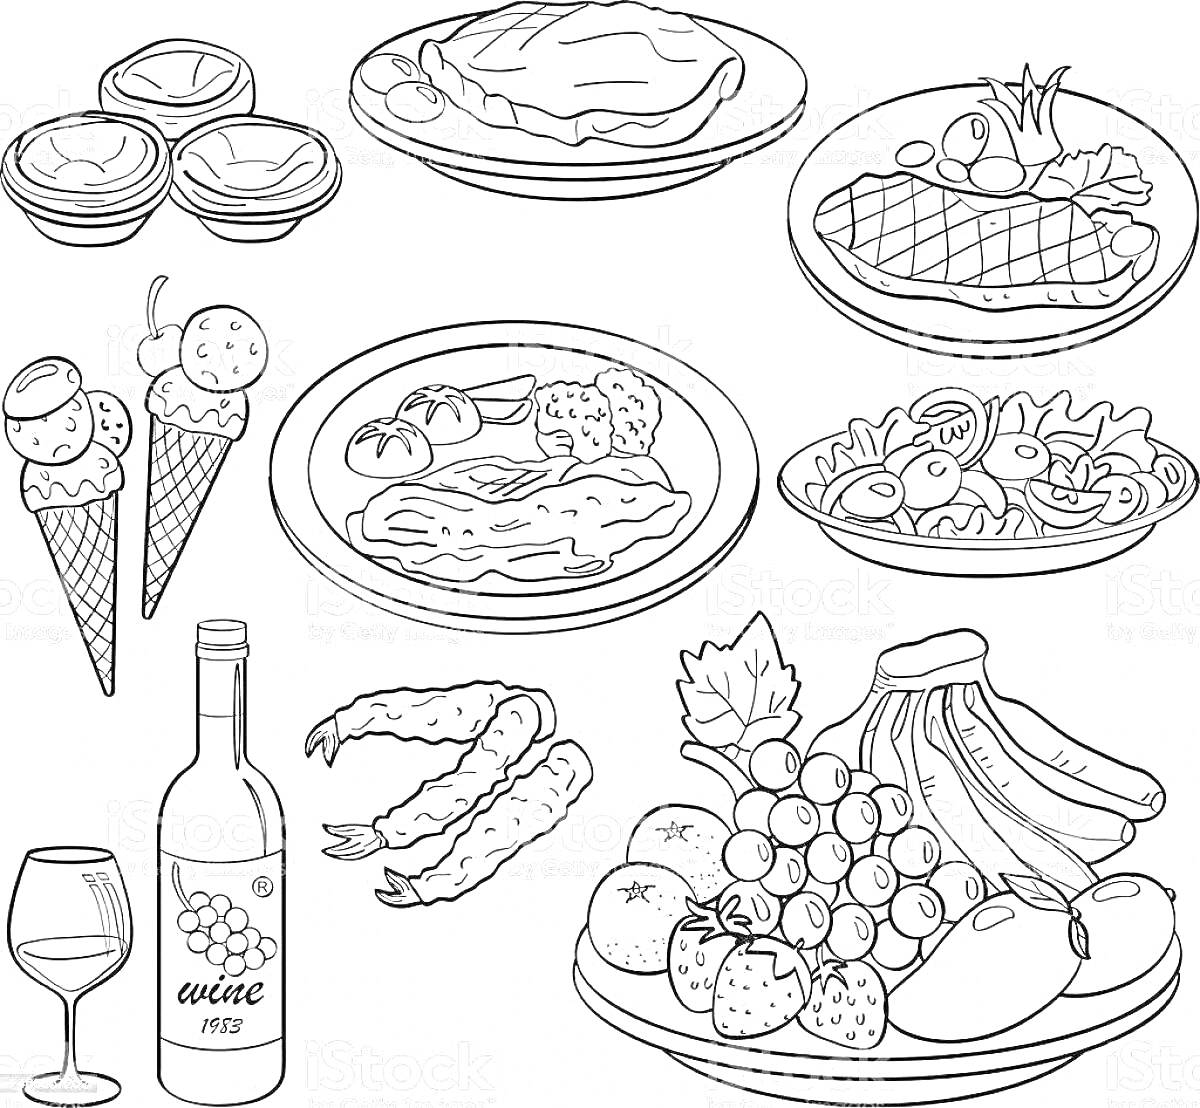 Раскраска стол с пирогами, блинами, стейком, курицей, салатом, мороженым, бутылкой вина и бокалом, креветками, тарелкой с фруктами (виноград, бананы, клубника, апельсин)